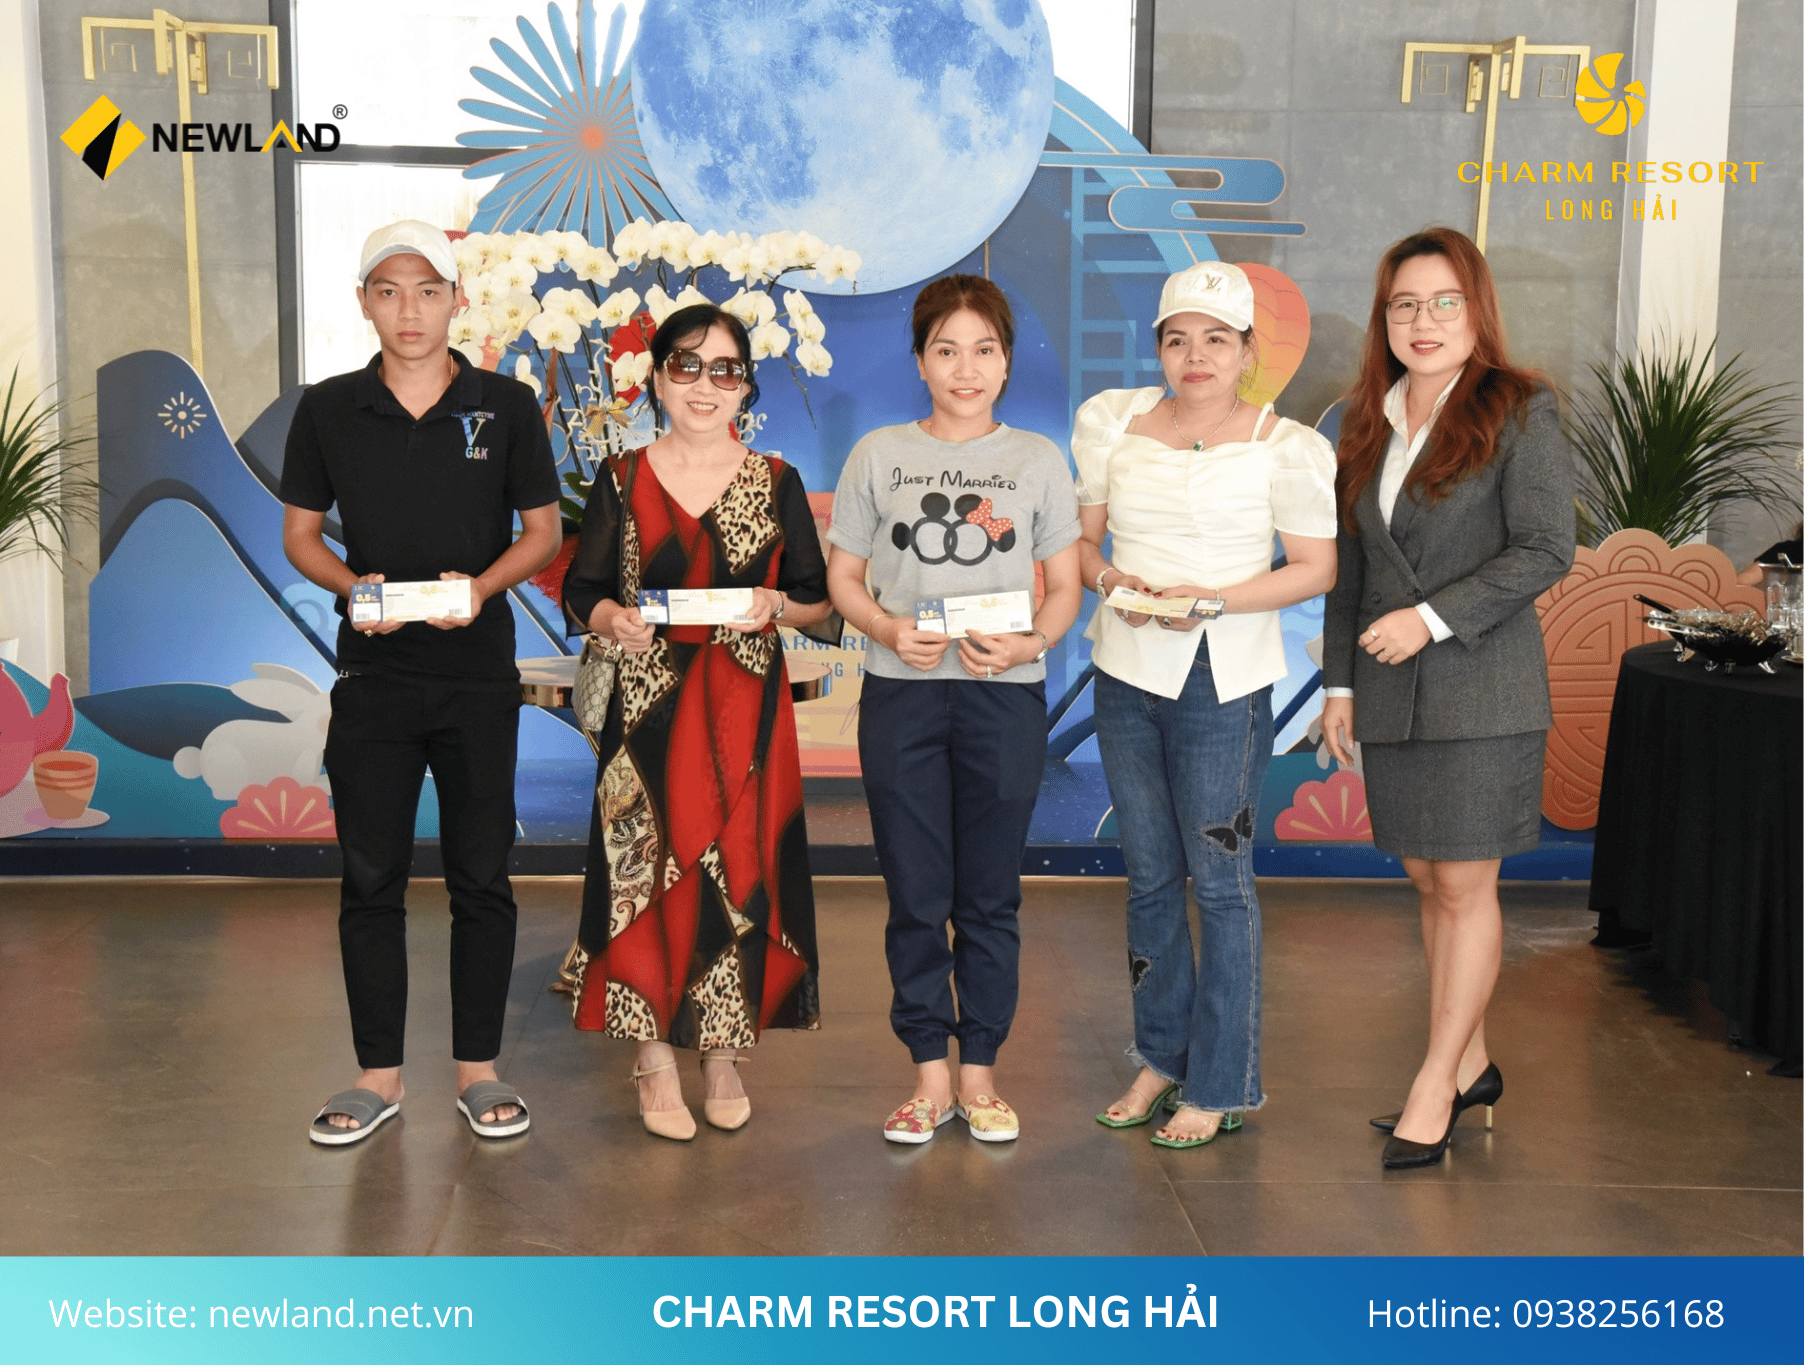 Charm Resort Long Hải là dự án khu căn hộ, khách sạn cao tầng và chuỗi tiện ích - dịch vụ - thương mại nằm trong top 2 dự án lớn đầu tư vào Long Hải.